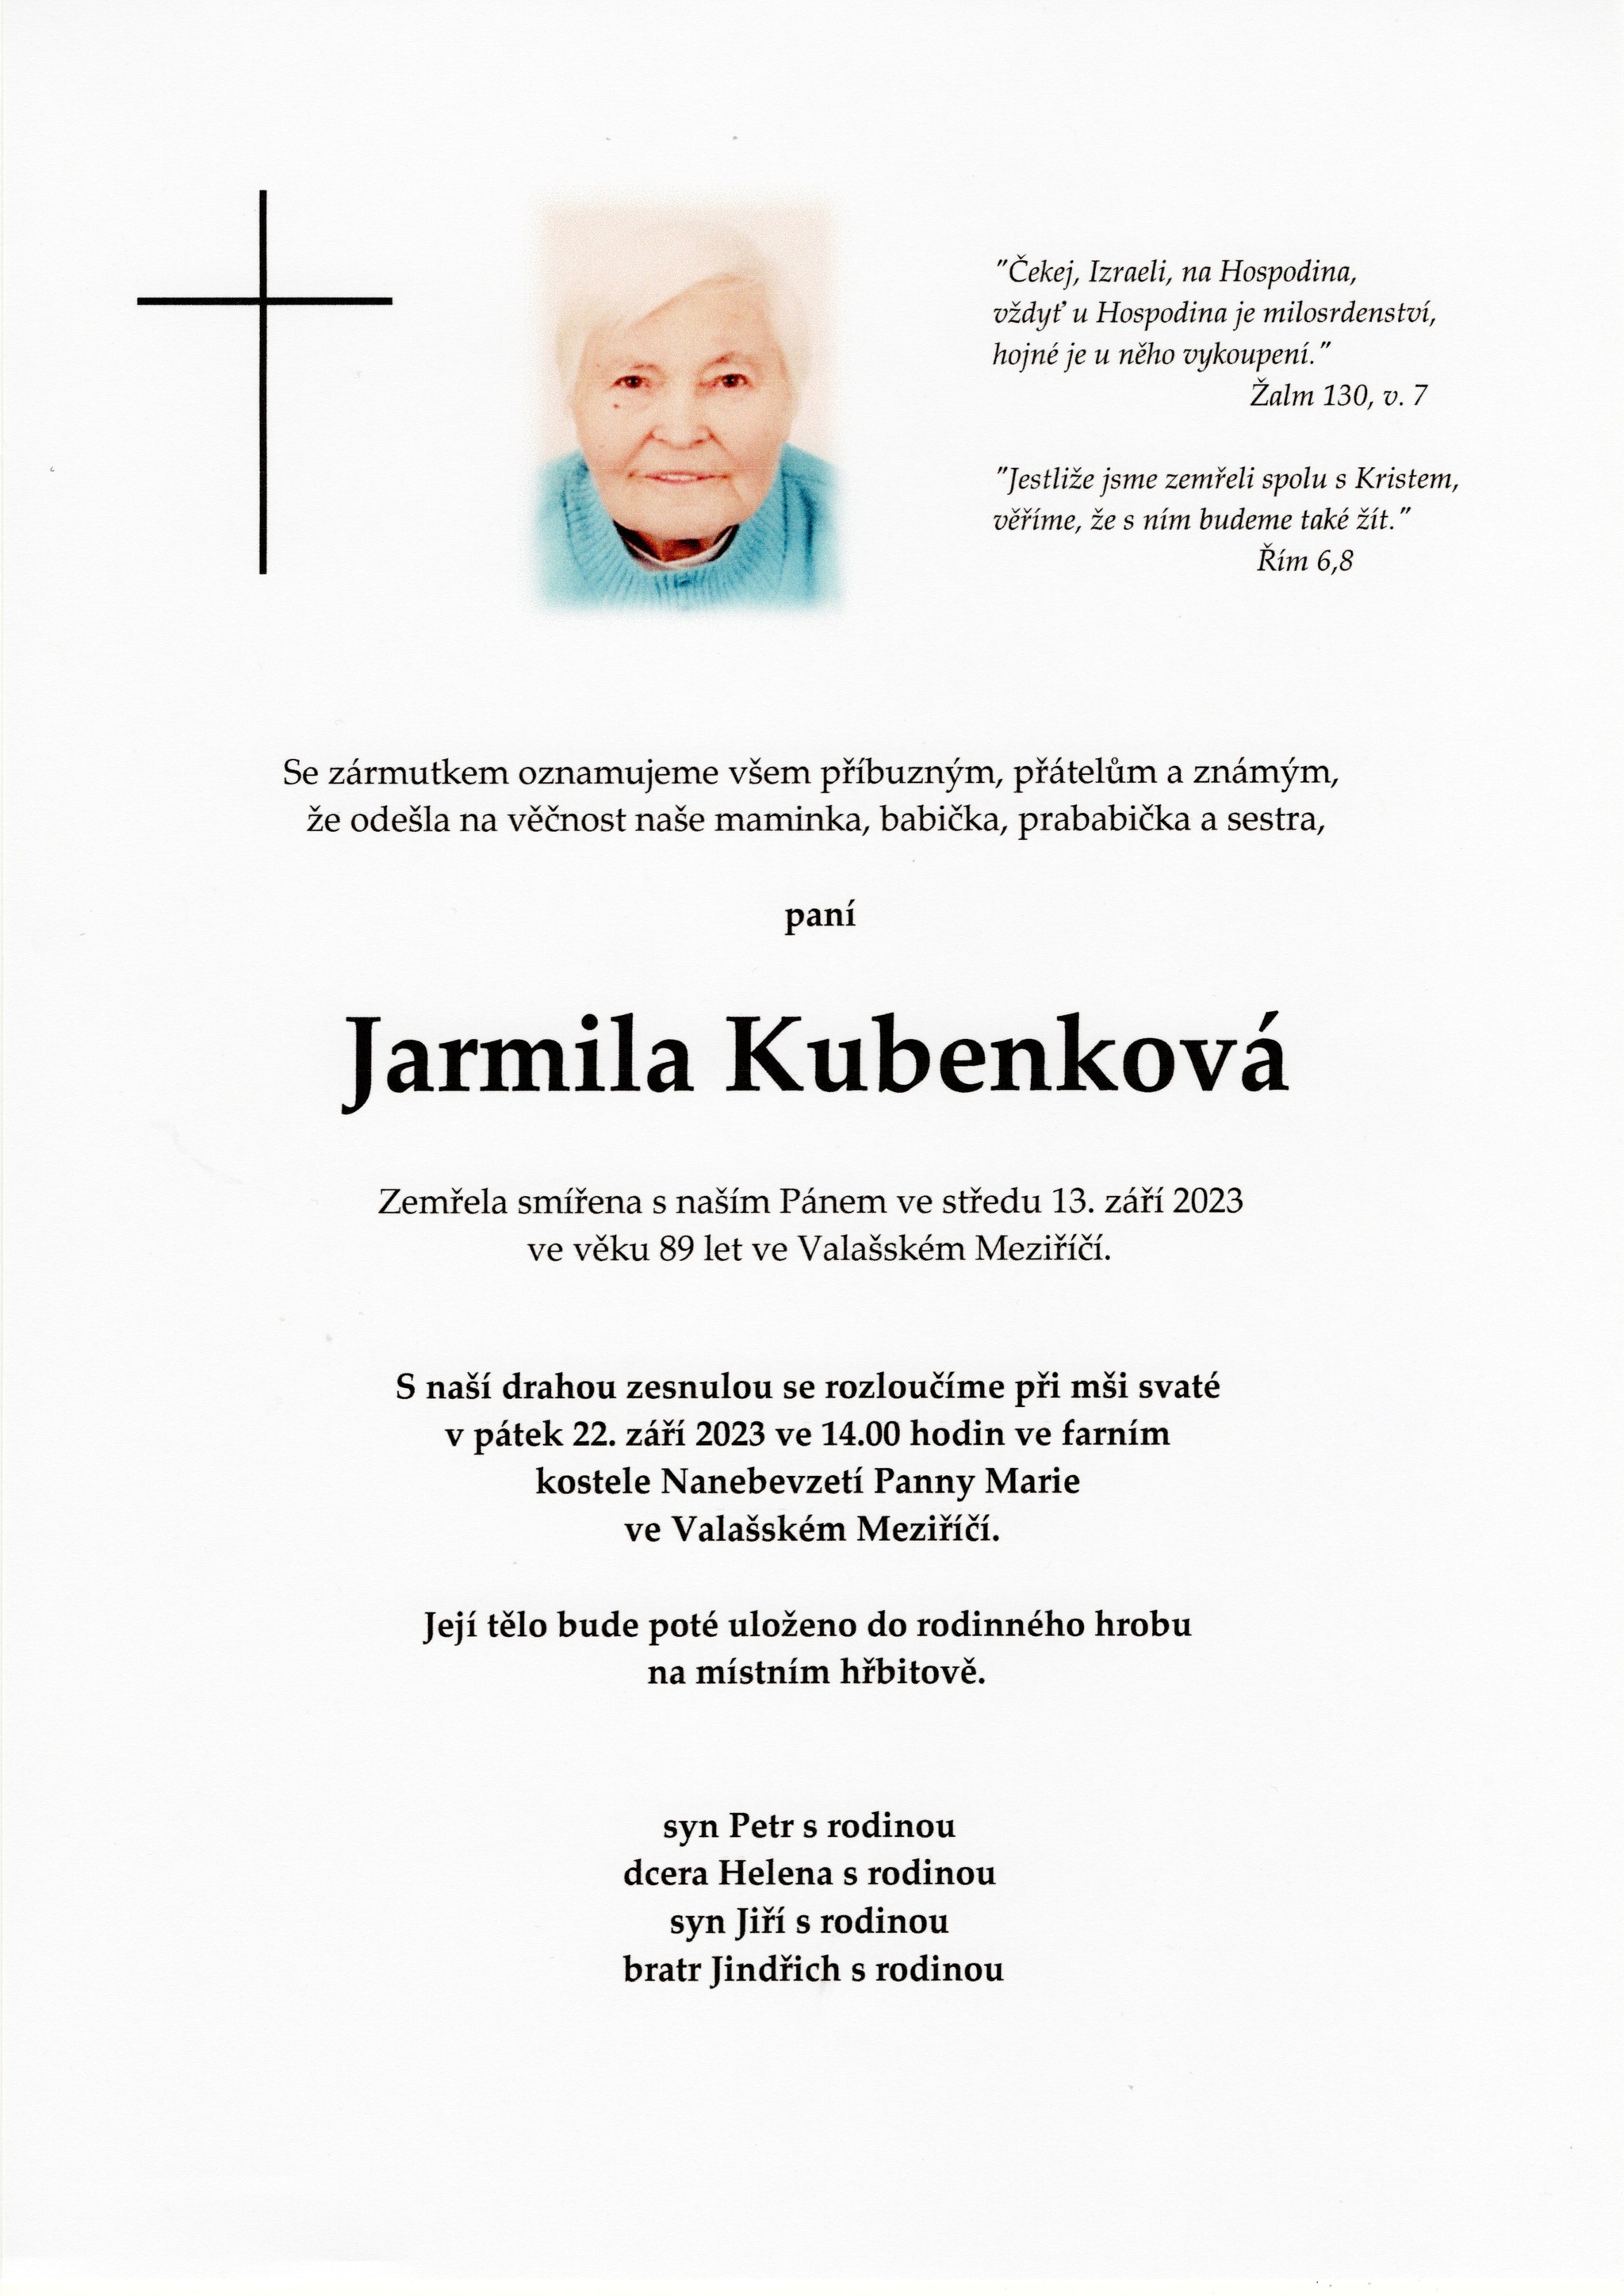 Jarmila Kubenková